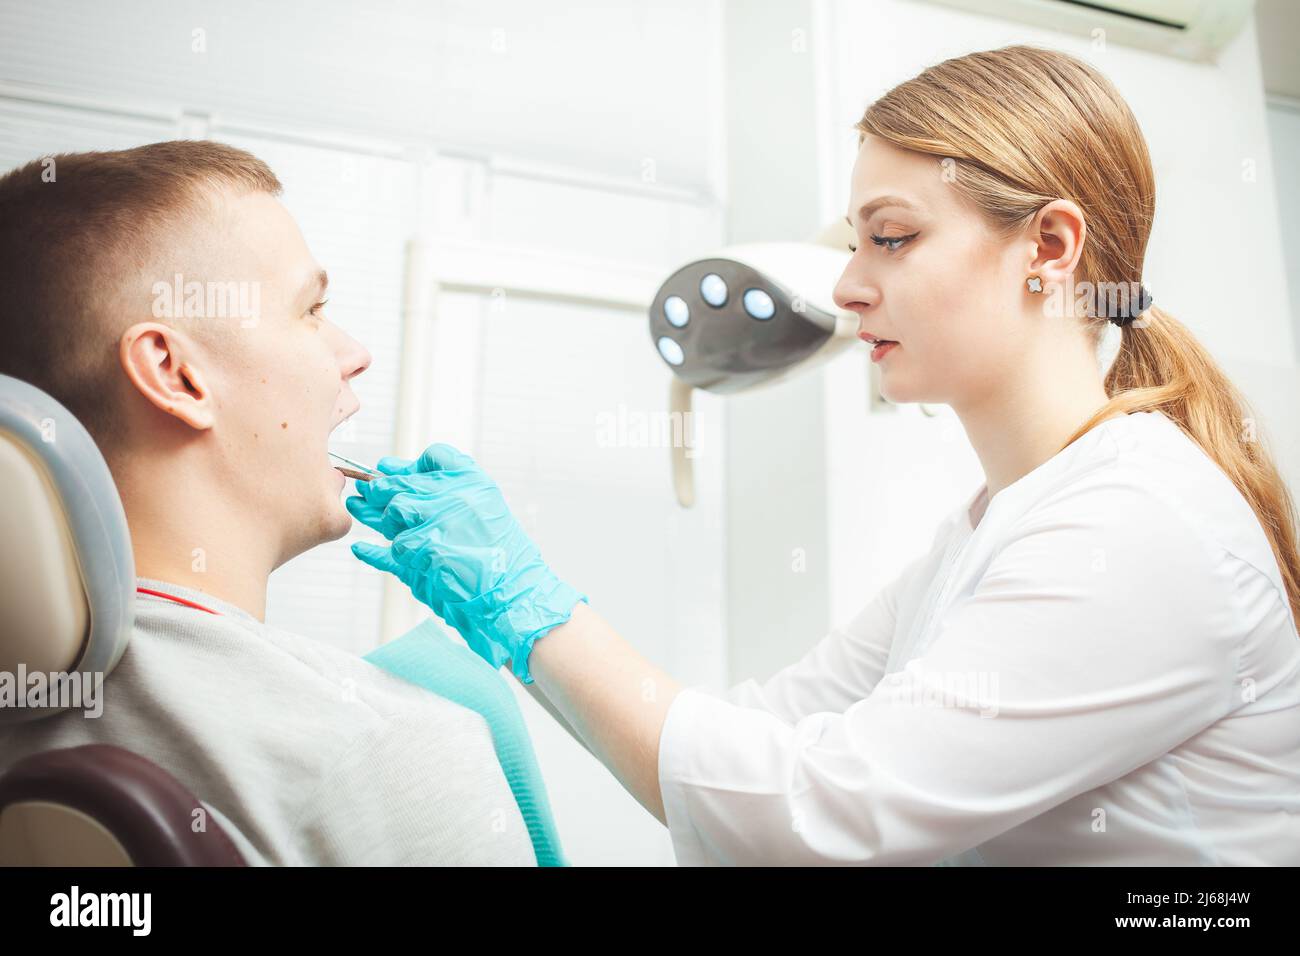 Medico dentista femminile europeo tratta il paziente, esamina la bocca e i denti. Servizio professionale, cordiale, sorridente, felice e soddisfatto, calmo Foto Stock